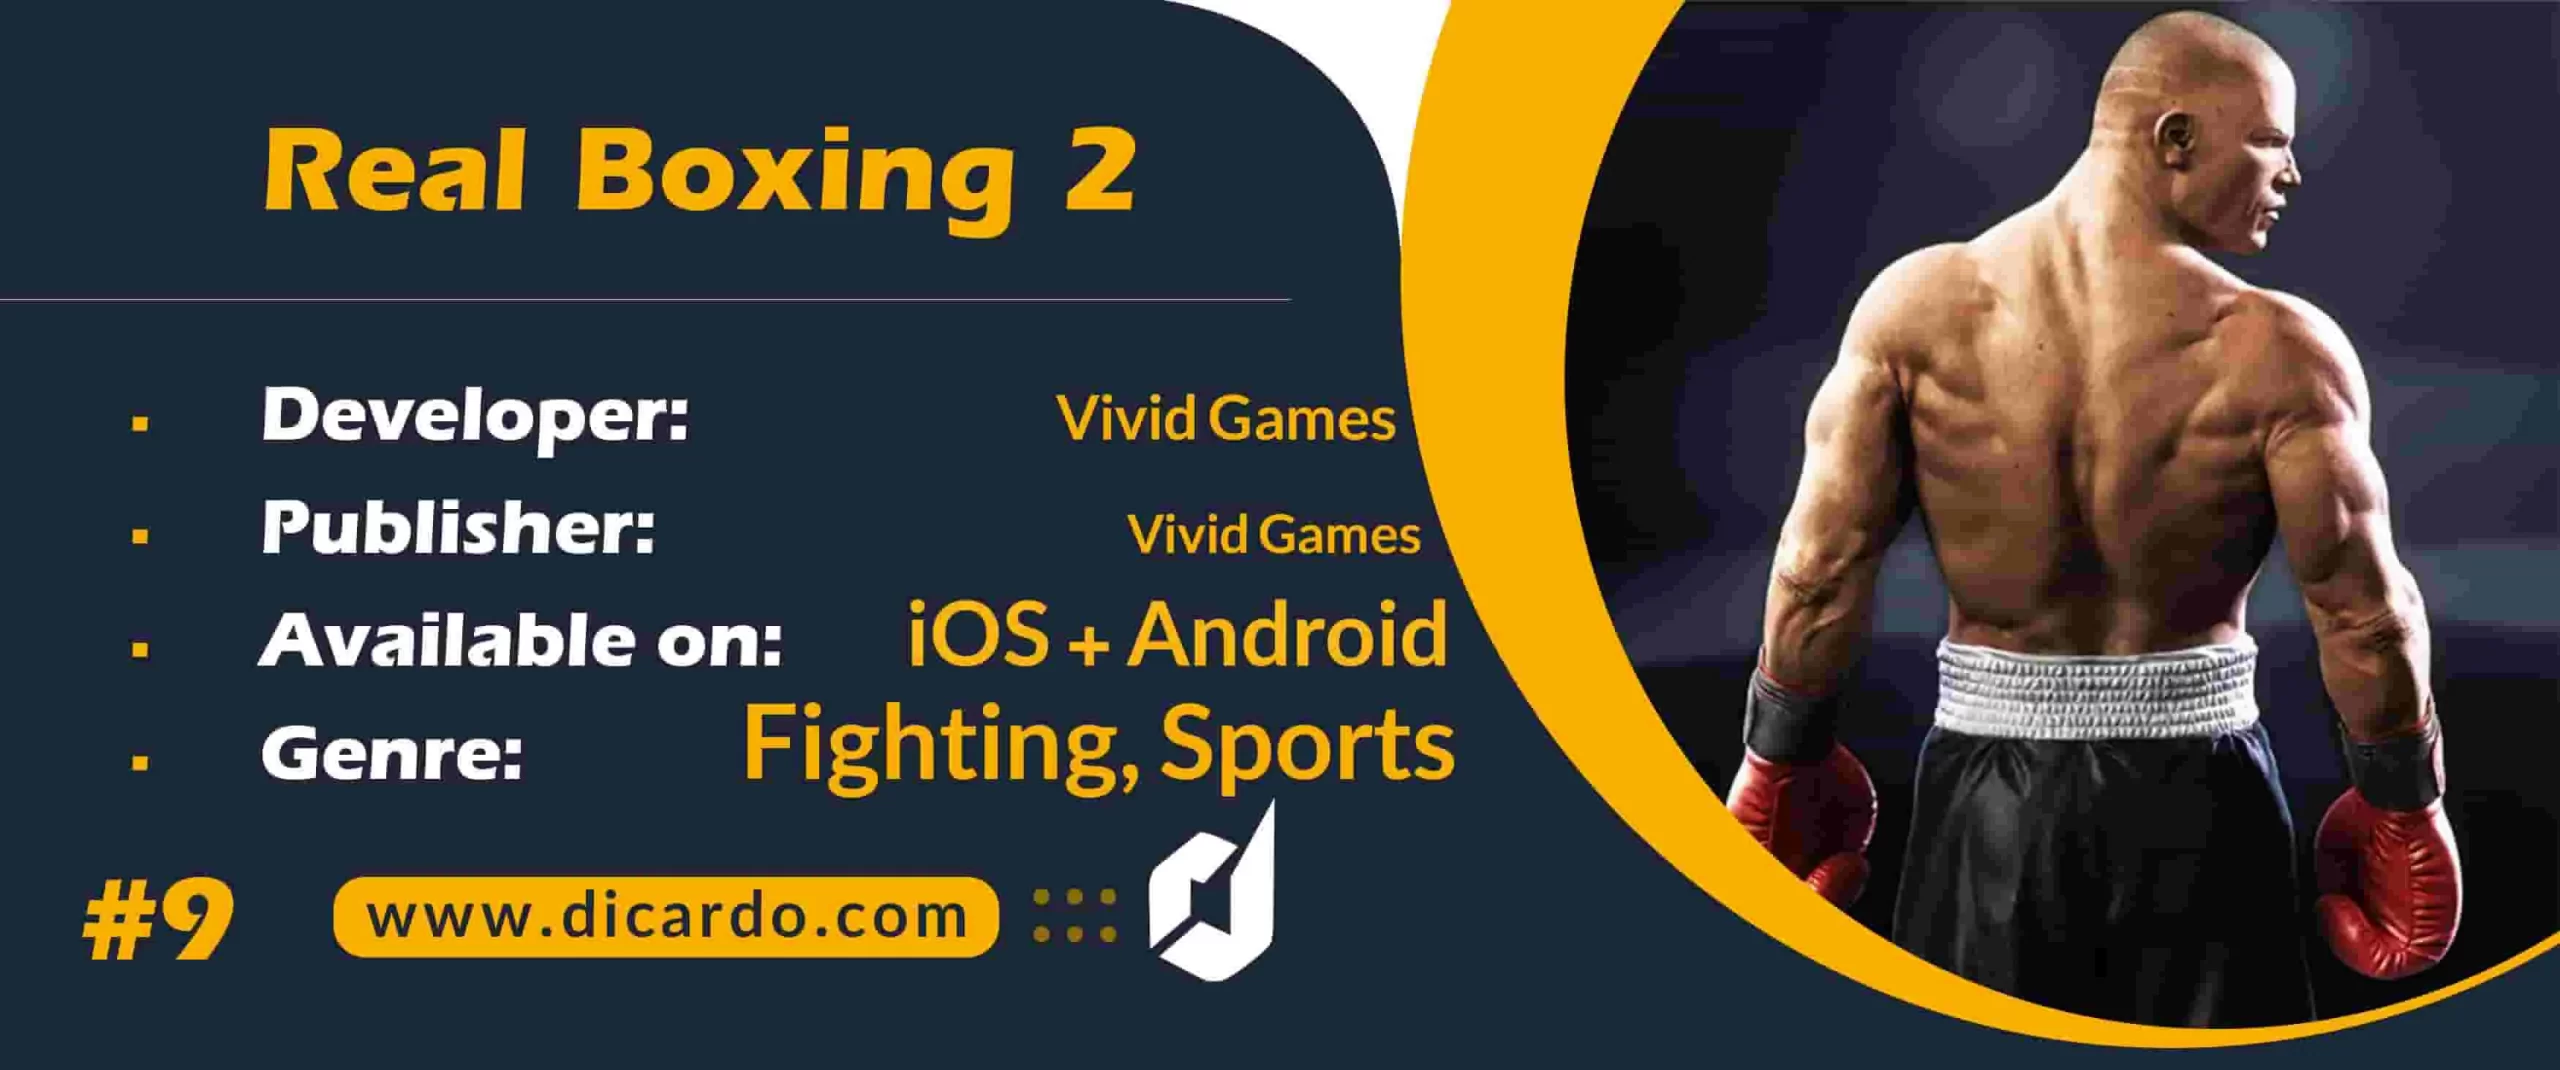 #9 ریل بوکسینگ تو Real Boxing 2 از بهترین بازیهای جنگی با مبارزات تاکتیکی